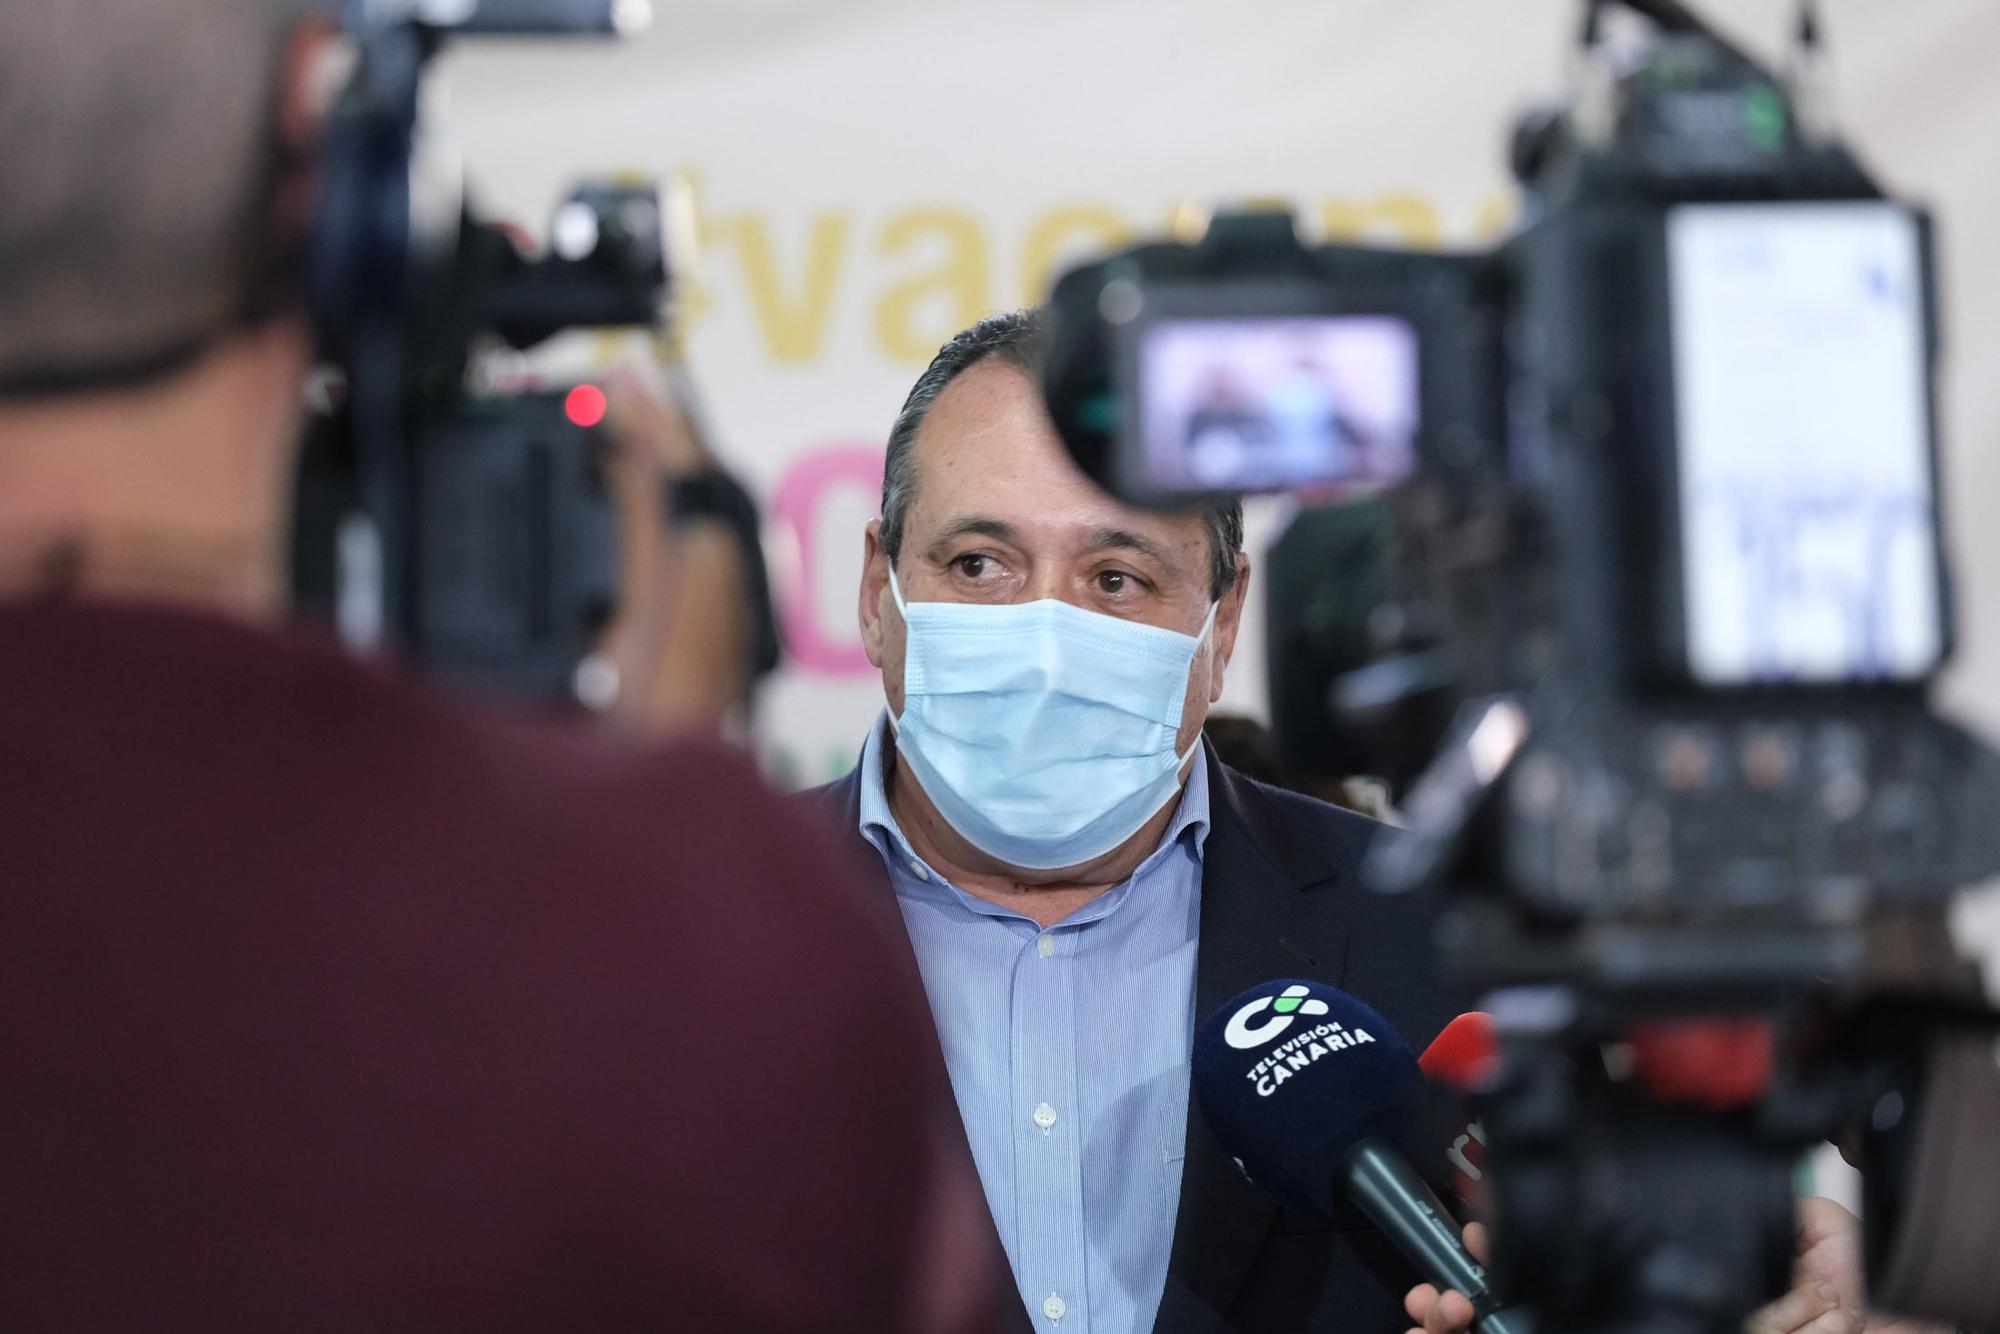 Ángel Víctor Torres y Blas Trujillo visitan el punto de vacunación de Infecar